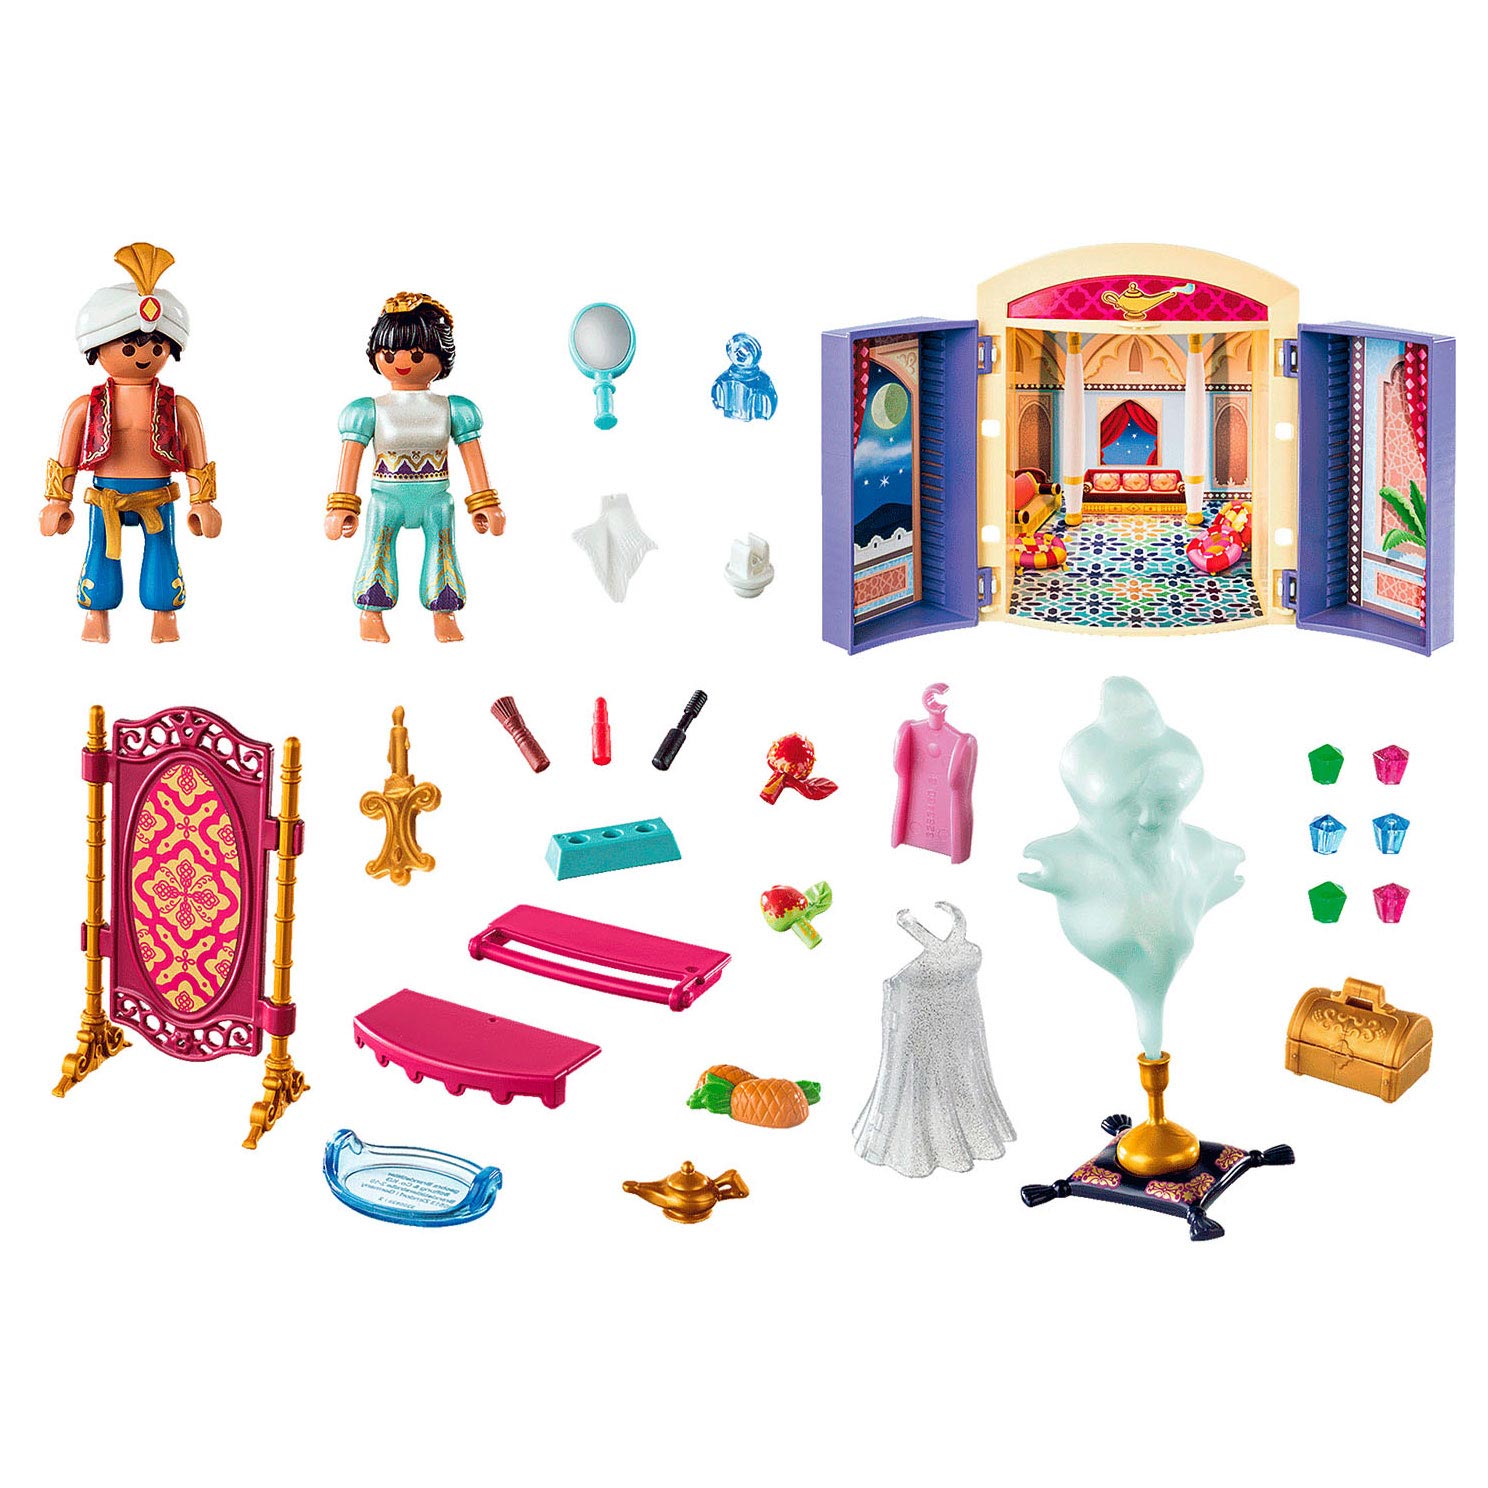 Playmobil Magic Speelbox Orient prinses - 70508